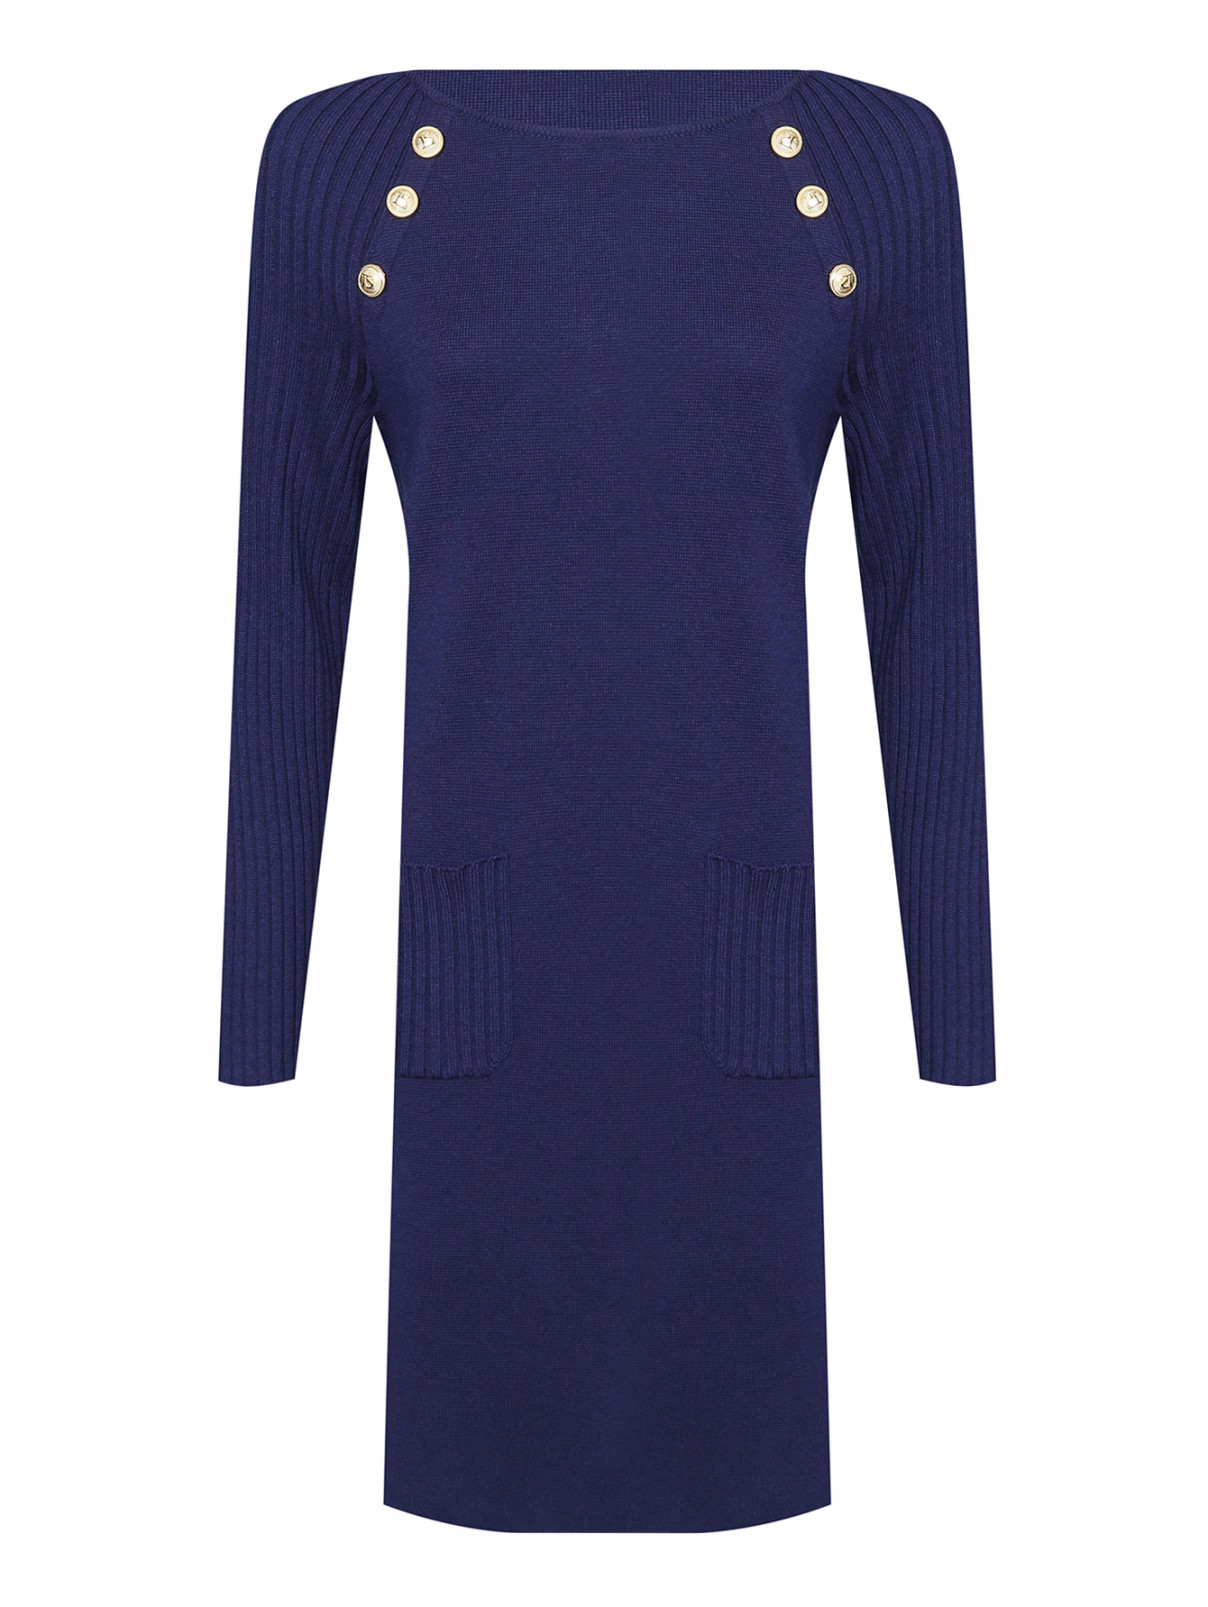 Трикотажное платье из шерсти с карманами Luisa Spagnoli  –  Общий вид  – Цвет:  Синий